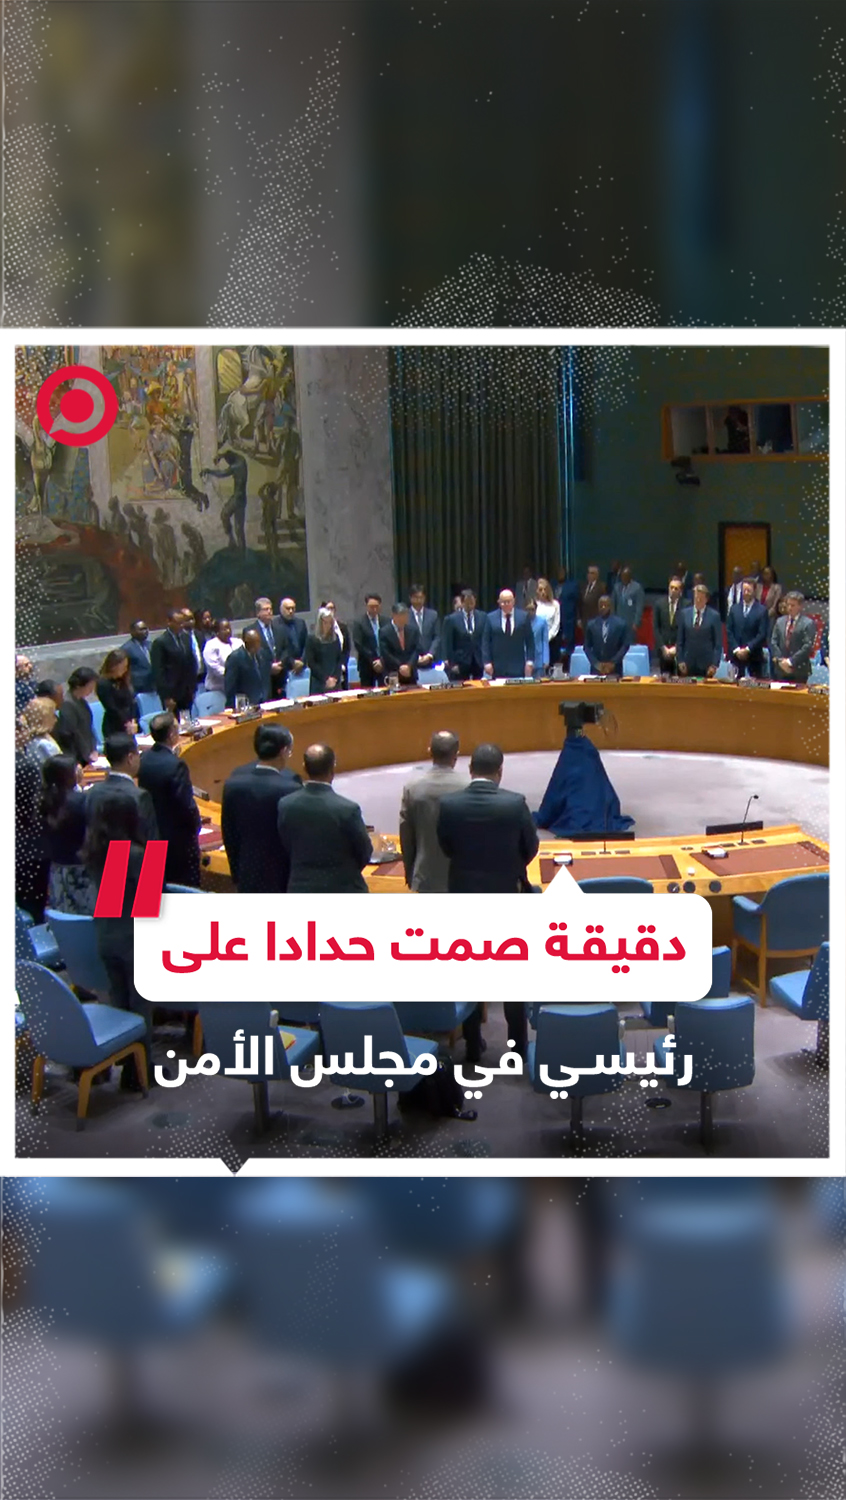 أعضاء مجلس الأمن الدولي يقفون دقيقة صمت حدادا على أرواح الرئيس الإيراني ومرافقيه